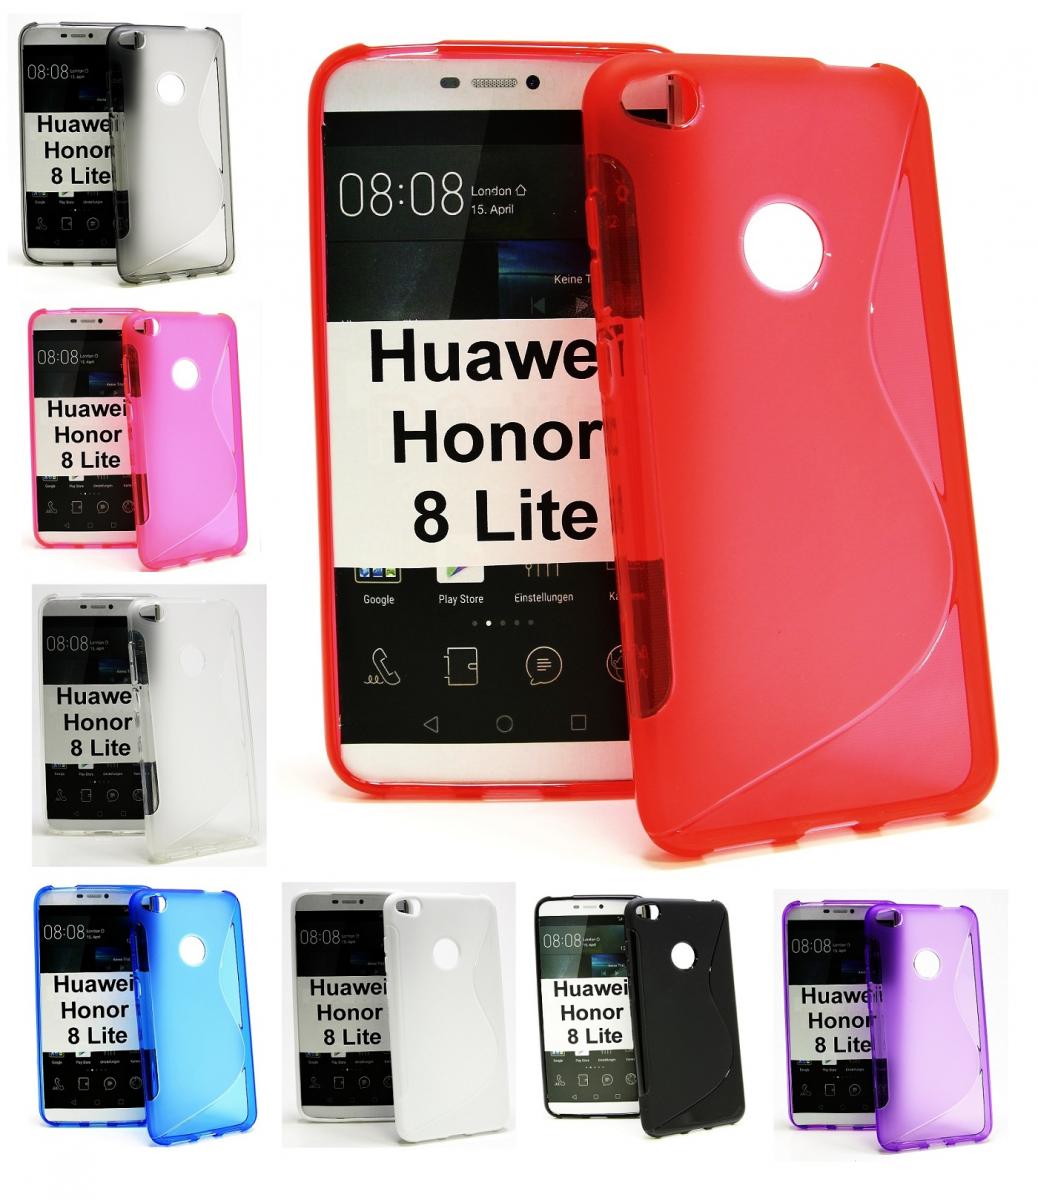 Huawei honor 8 lite indonesia